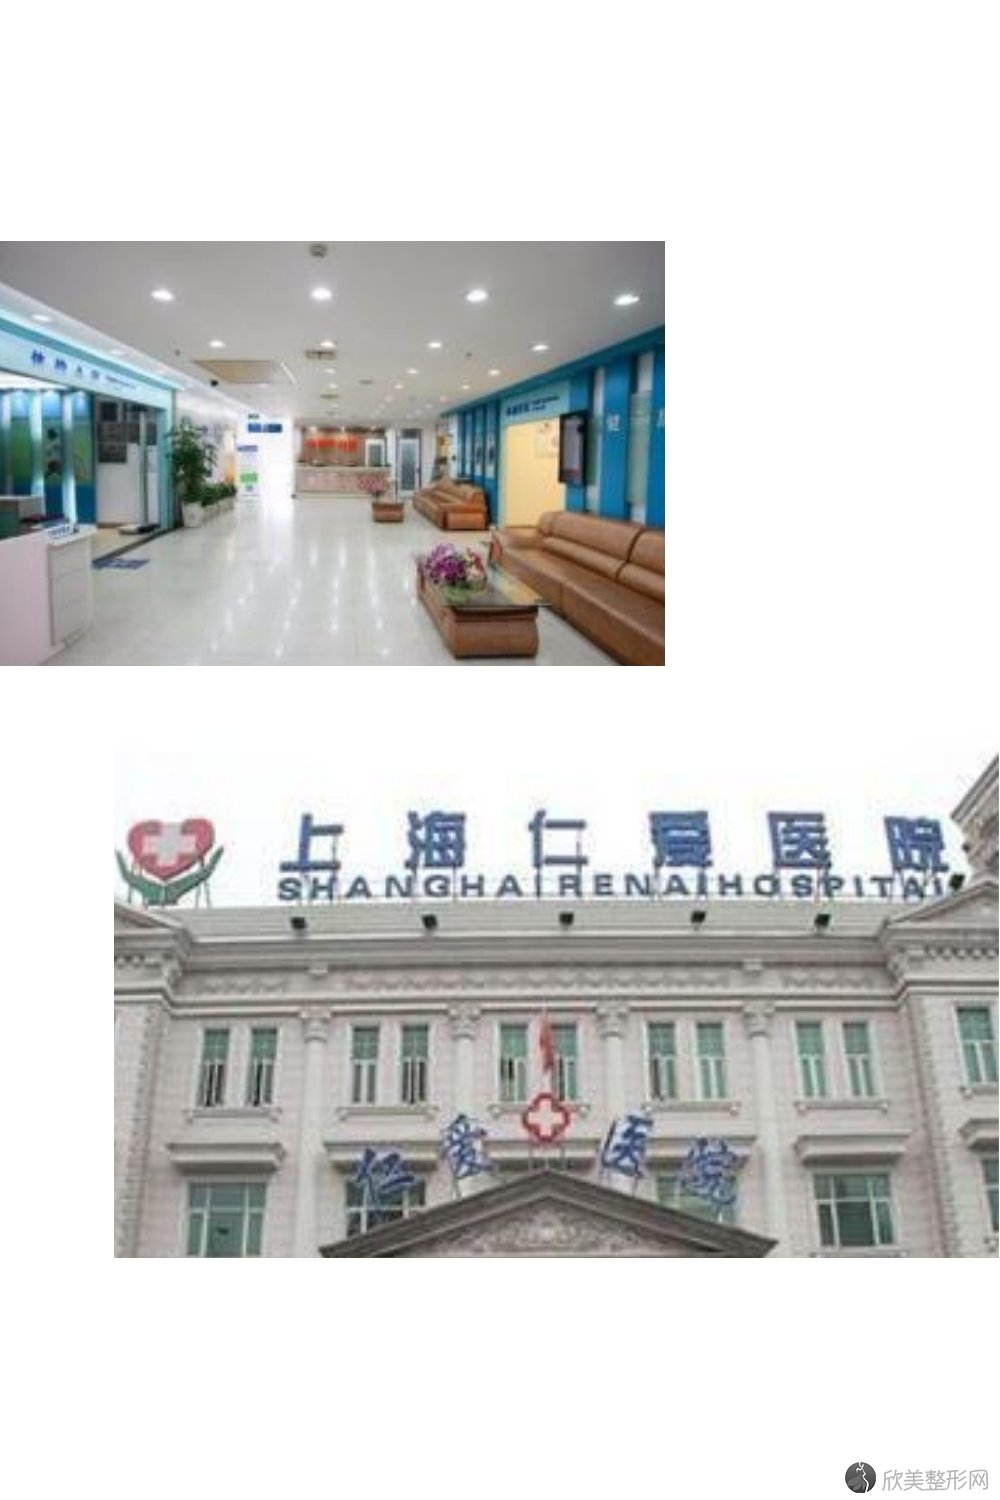 上海仁爱医院整形美容科2021年整形价格表曝光!